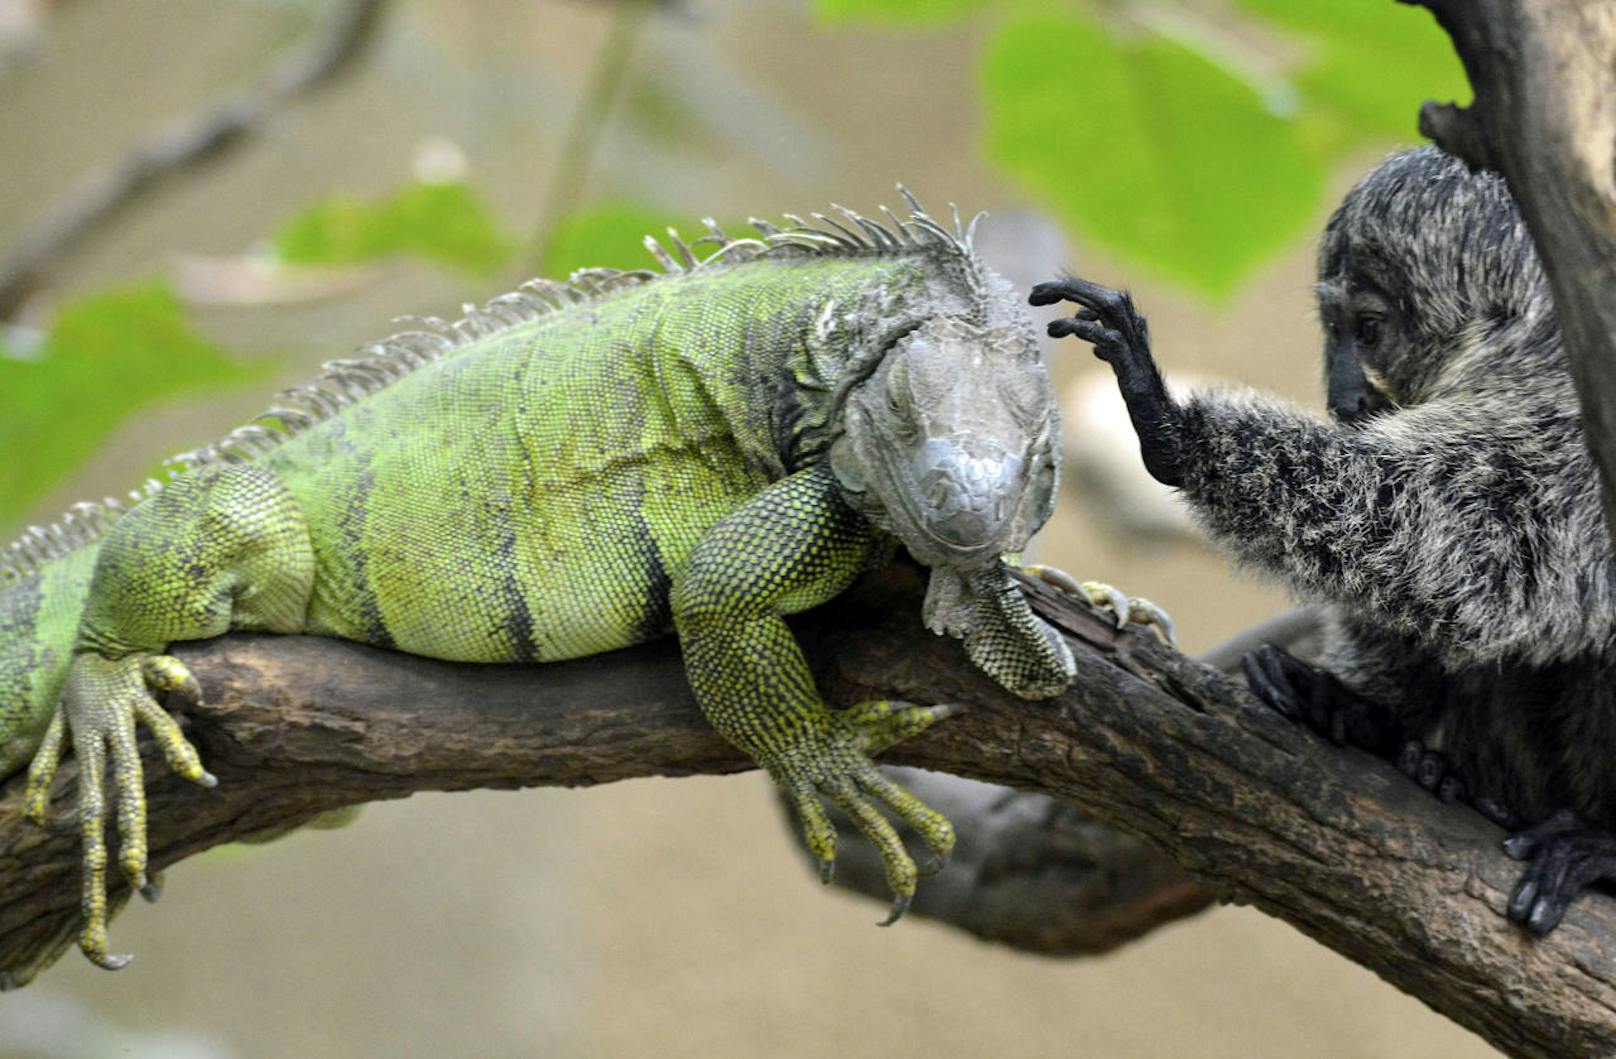 <b>Büschelaffe streichelt Leguan!</b> Diese beiden Kumpel zeigen, dass Freundschaft nichts mit der Spezies zu tun hat.